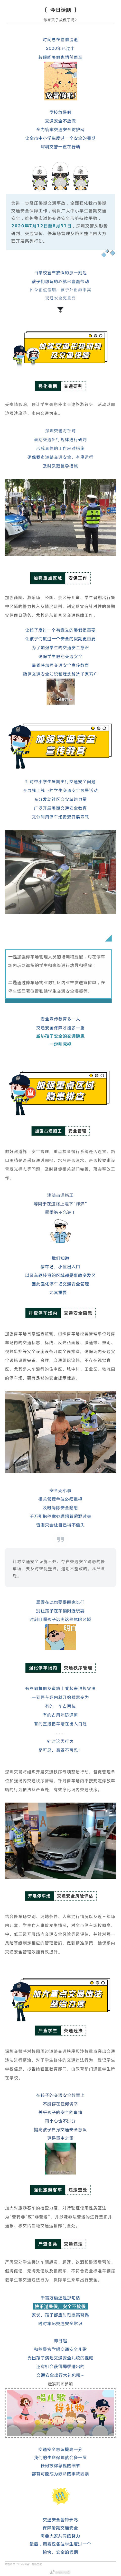 暑期到!深圳交警保障暑期安全行动全面开启